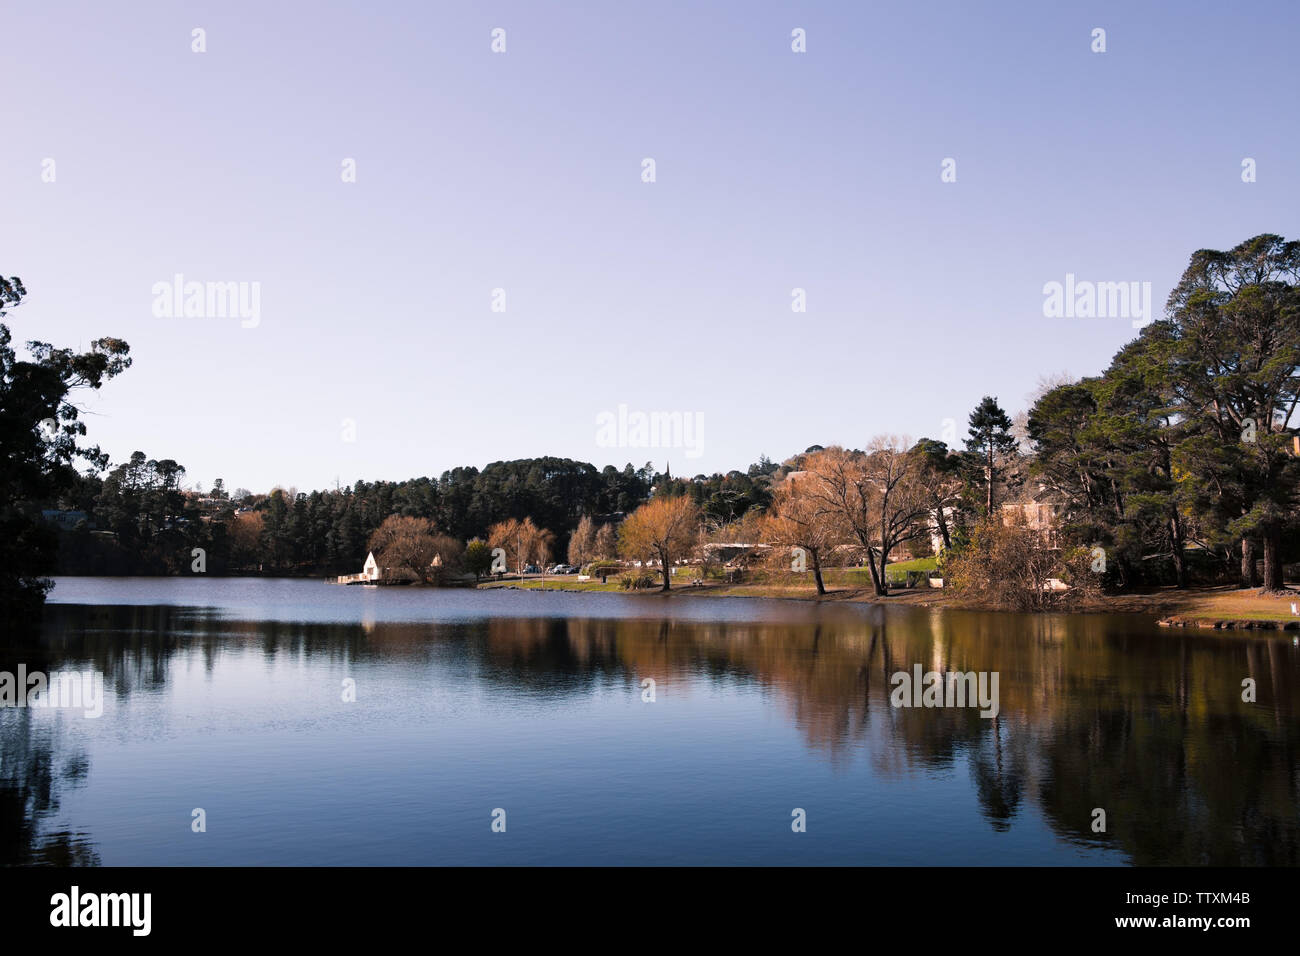 Immagine di un lago con alberi e riflessioni ad albero, con un vasto e blu cielo viola Foto Stock